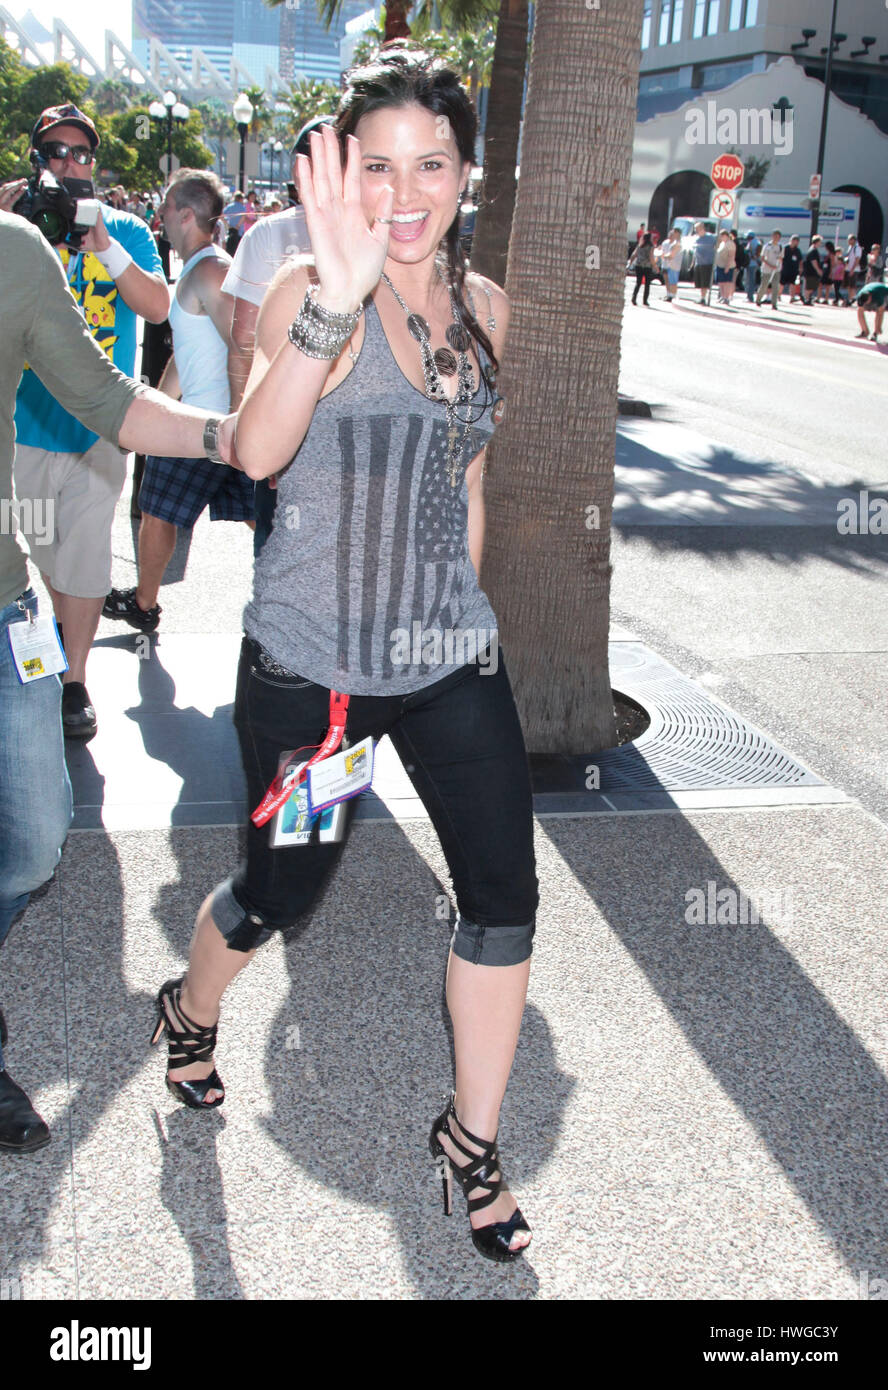 Schauspielerin Katrina Law verlässt das Omni Hotel während der Comic-Con in San Diego, Kalifornien am 23. Juli 2011. Foto von Francis Specker Stockfoto